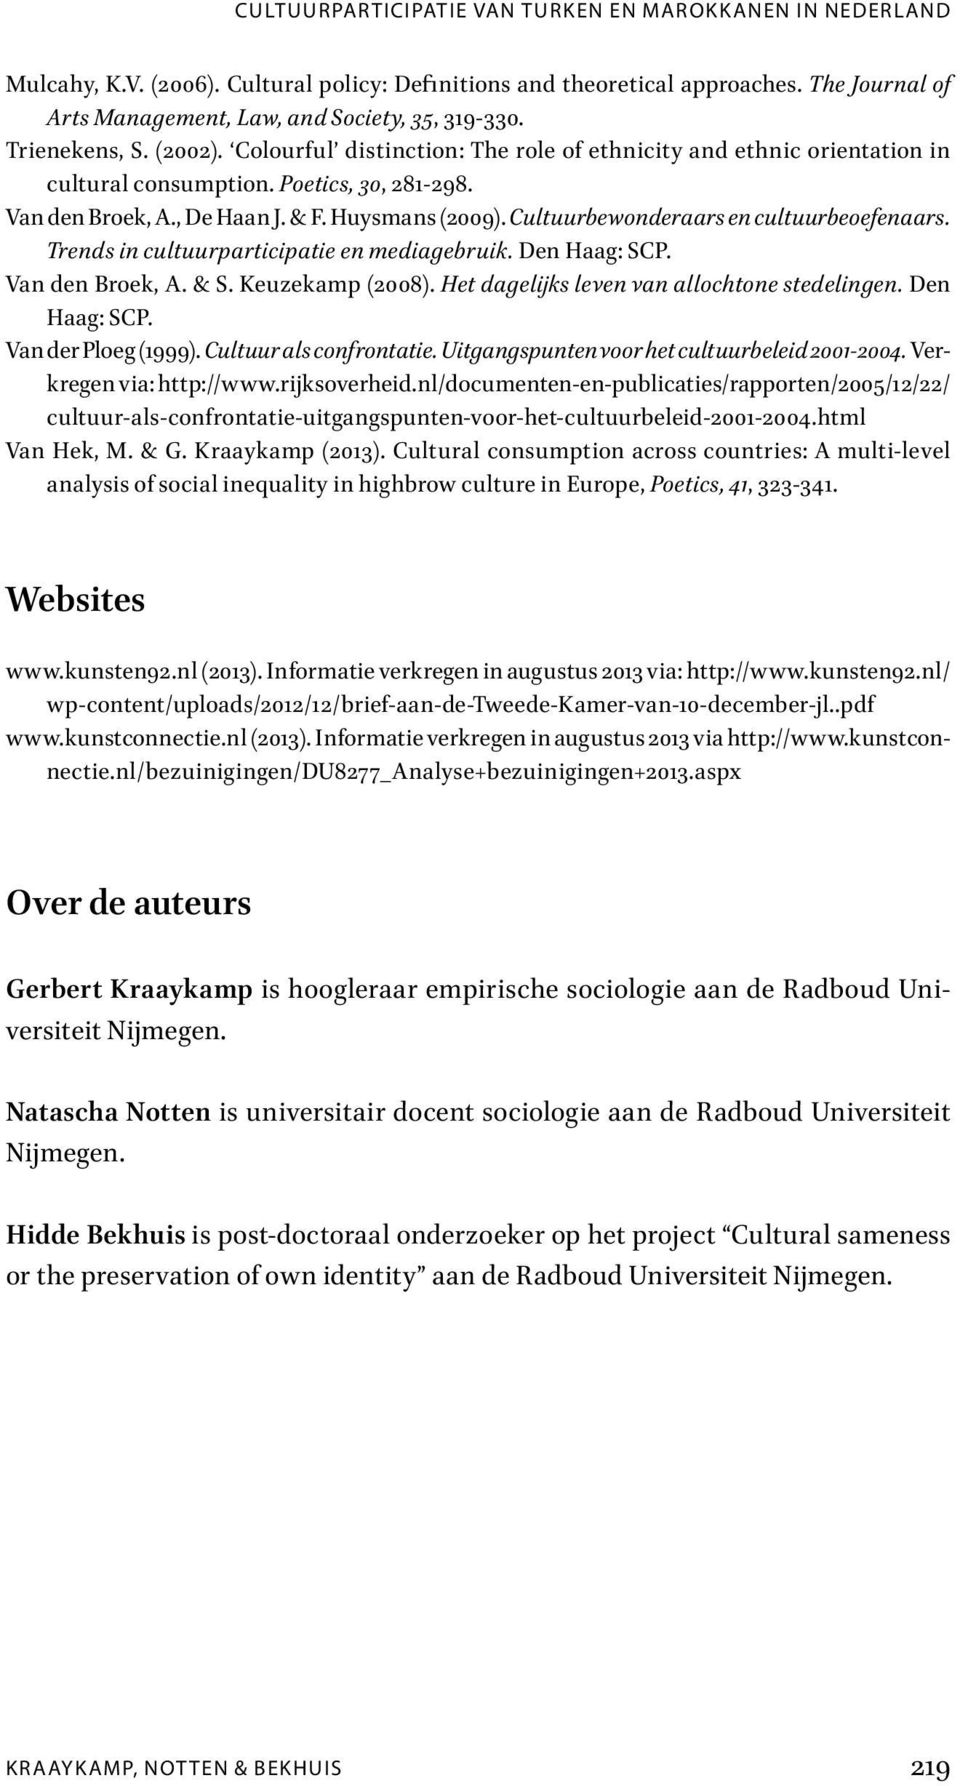 Van den Broek, A., De Haan J. & F. Huysmans (2009). Cultuurbewonderaars en cultuurbeoefenaars. Trends in cultuurparticipatie en mediagebruik. Den Haag: SCP. Van den Broek, A. & S. Keuzekamp (2008).